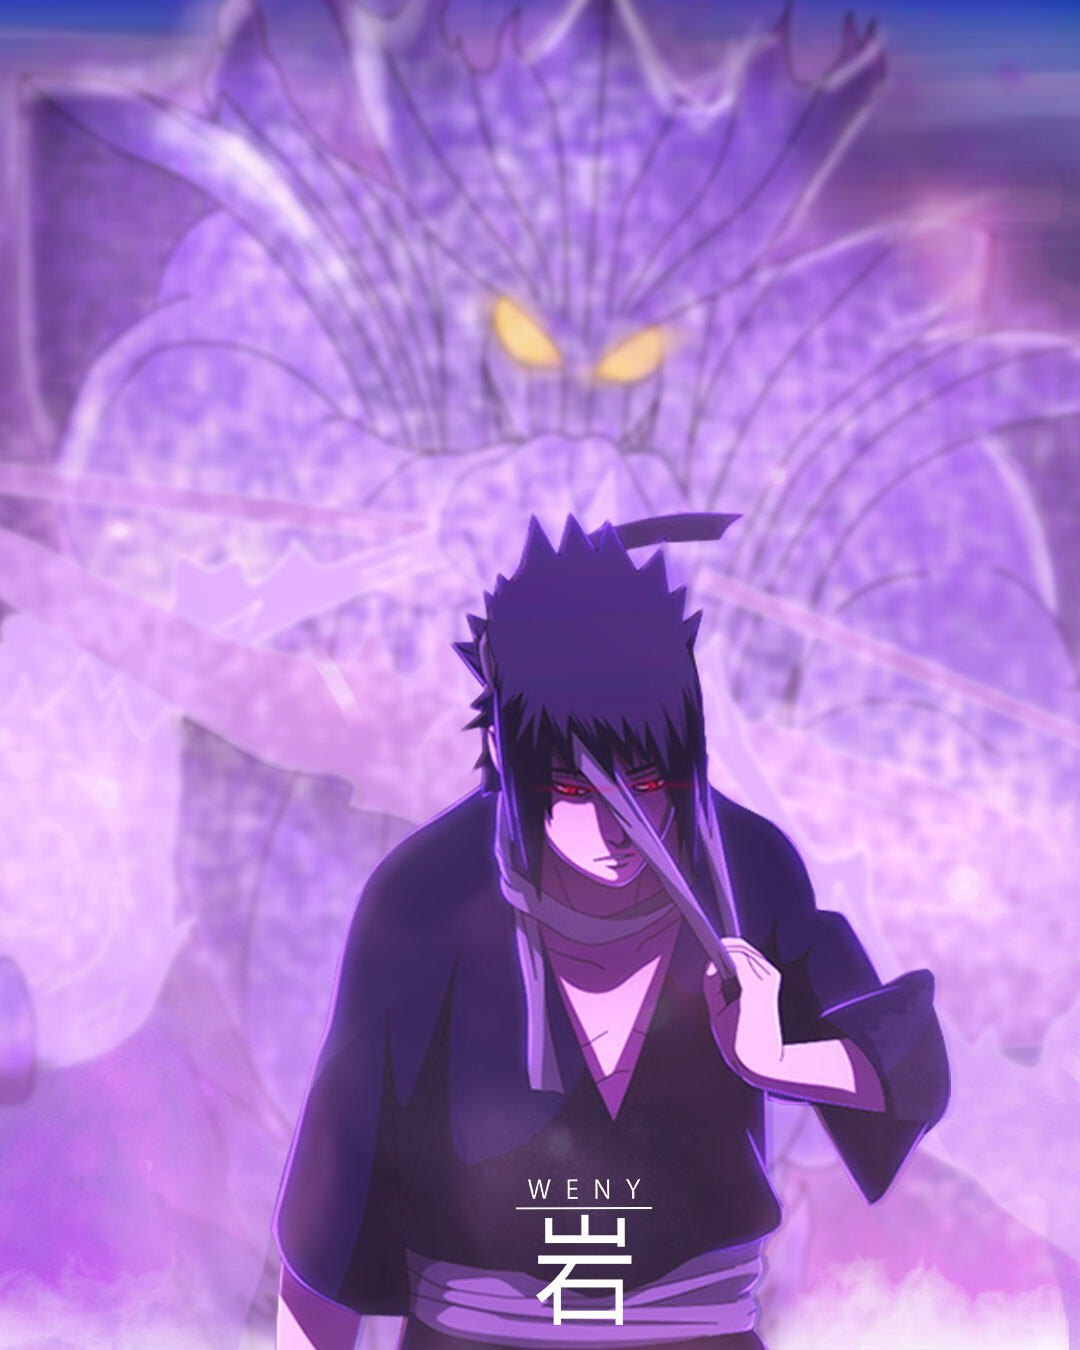 Tham khảo hình ảnh susanoo của sasuke để hiểu rõ hơn về kĩ năng của nhân  vật trong anime Naruto